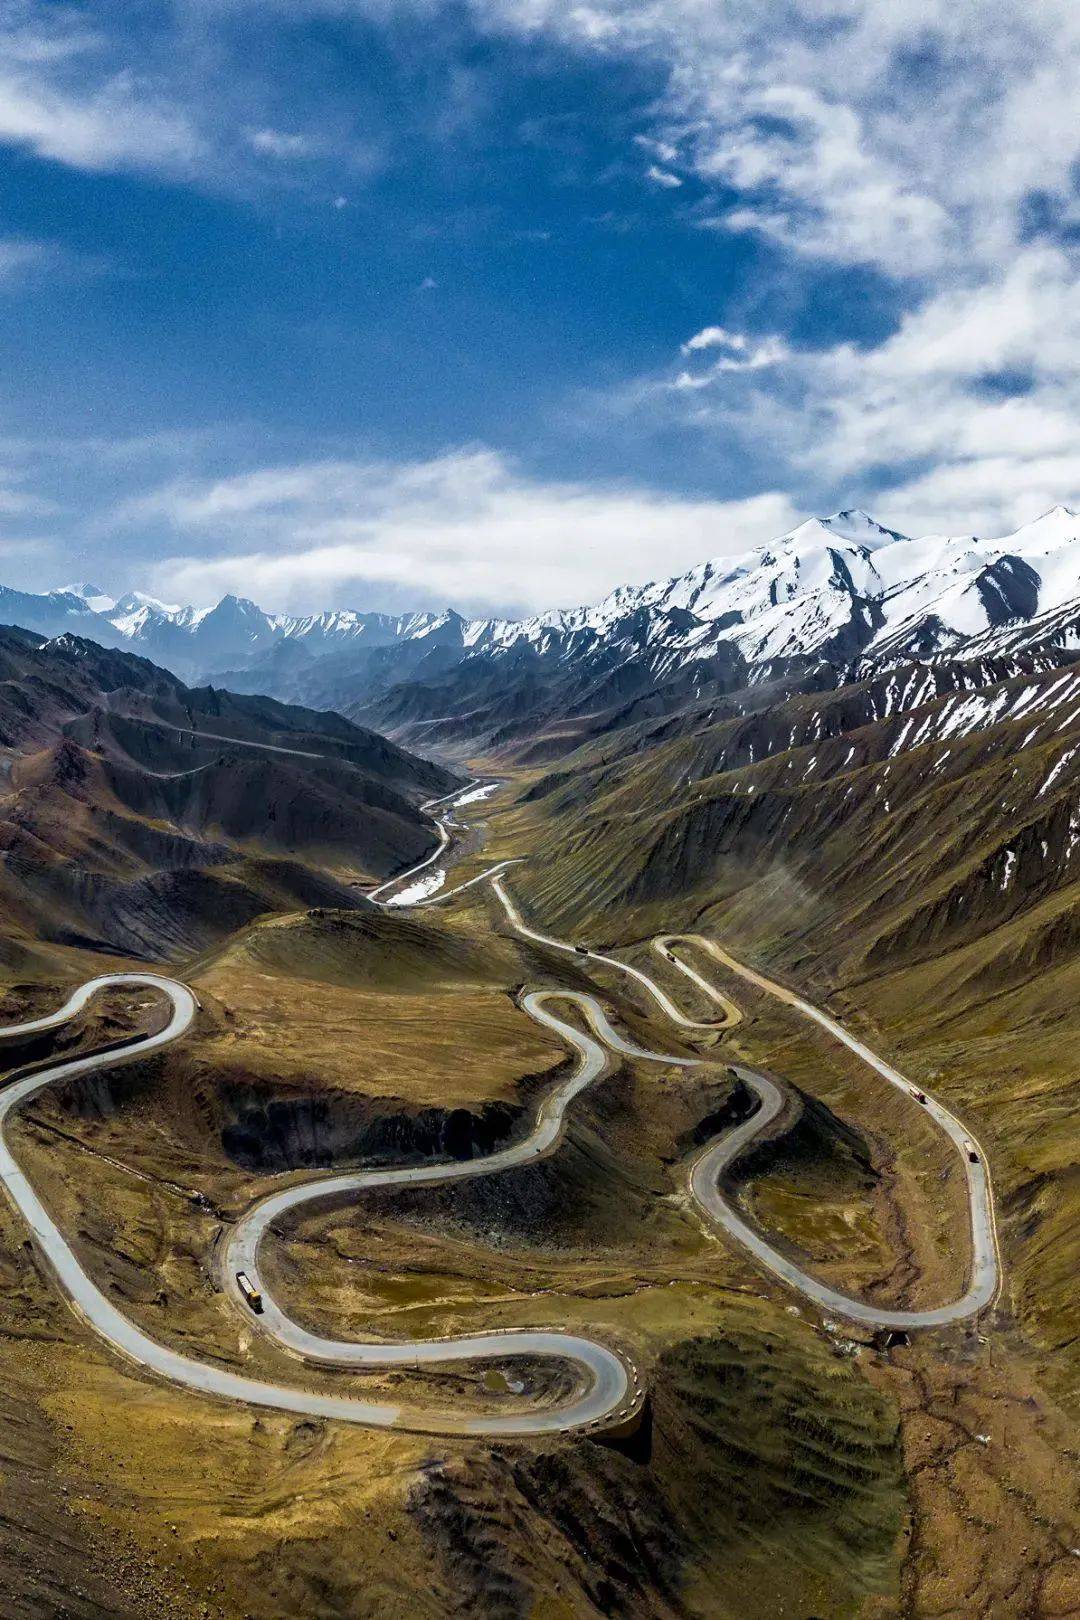 中国最长国道图片